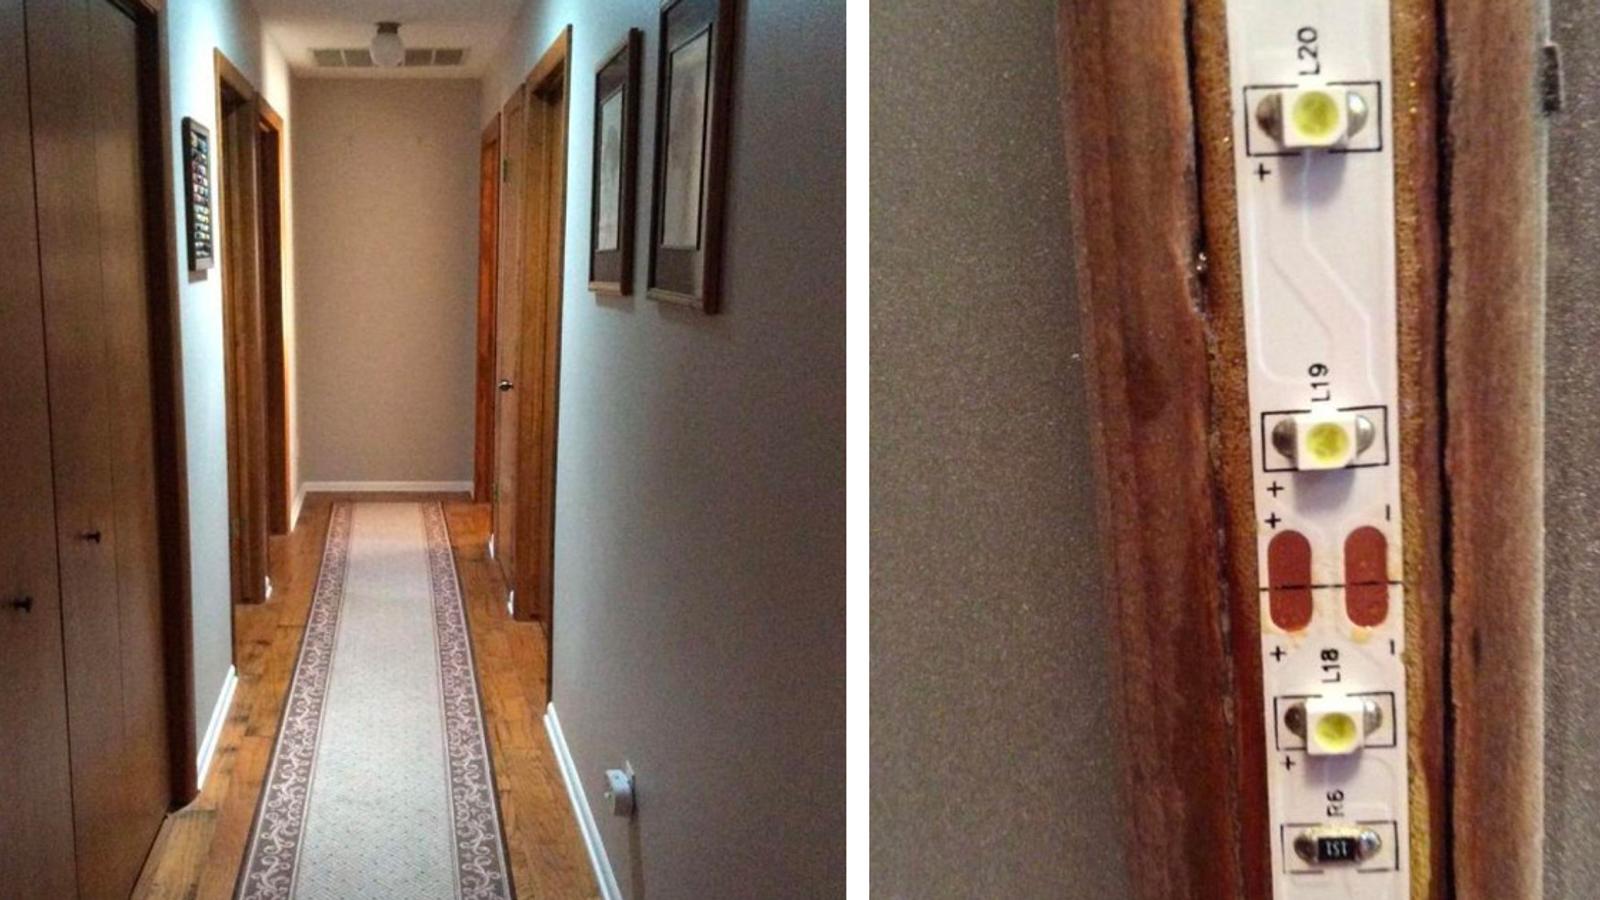 Son long couloir est sombre et ennuyeux, mais avec ce petit ajout ça change toute la maison.